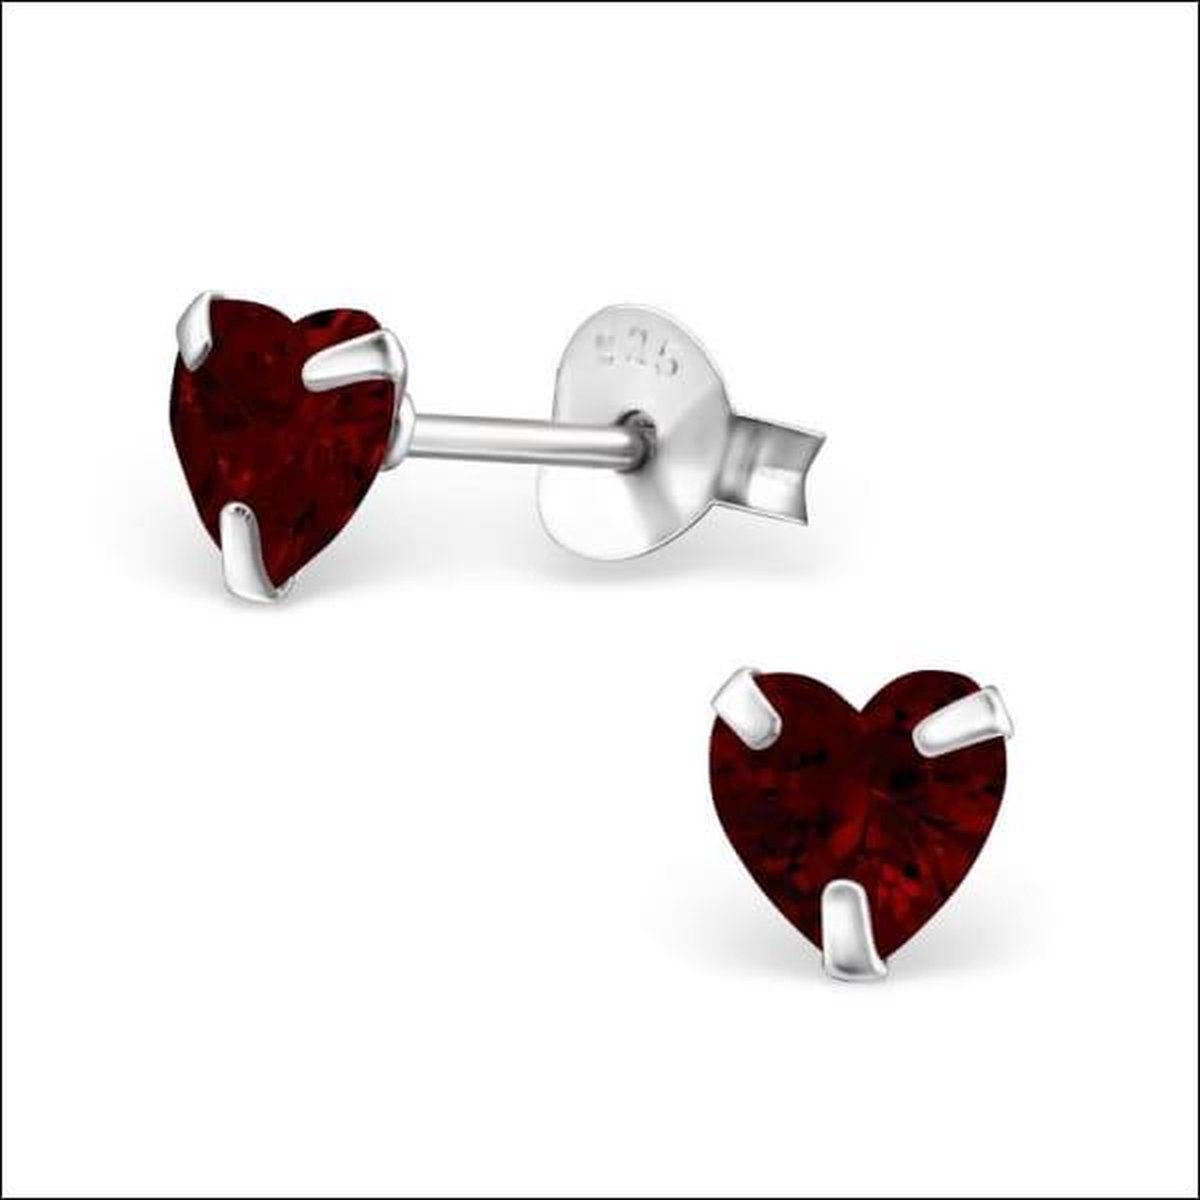 Aramat jewels ® - Kinder oorbellen met zirkonia hart 925 zilver rood 5mm